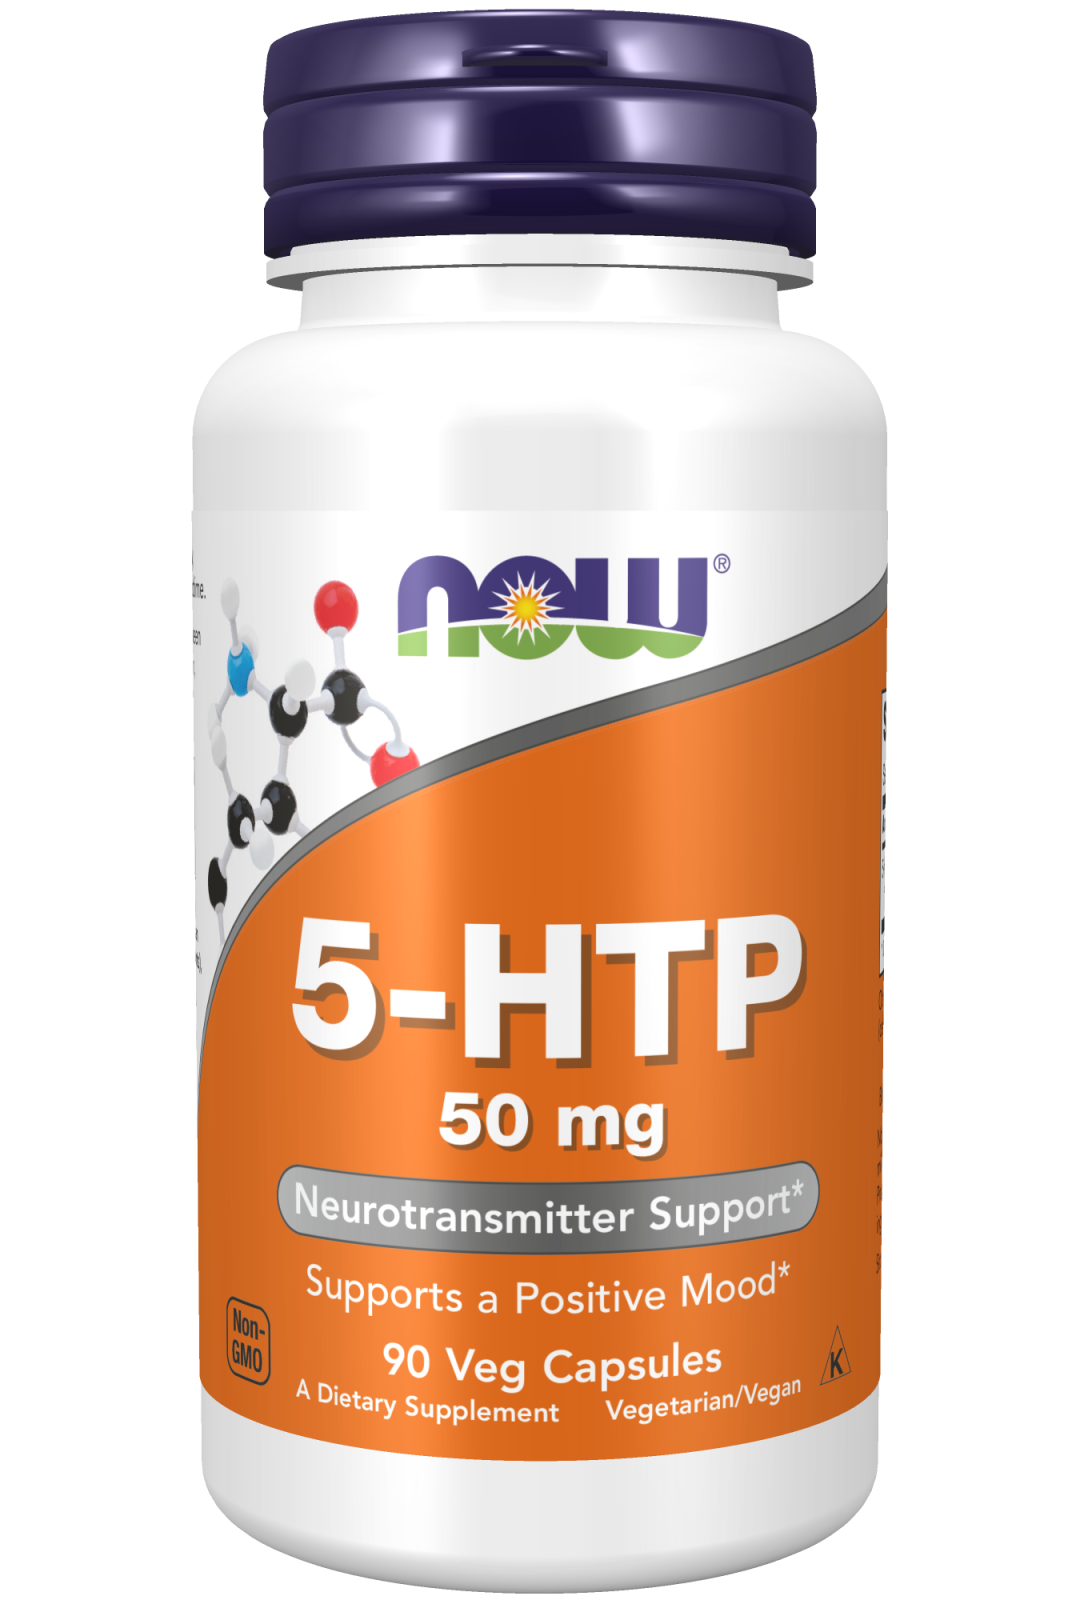 5-HTP 50 mg - 90 Veg Capsules Bottle